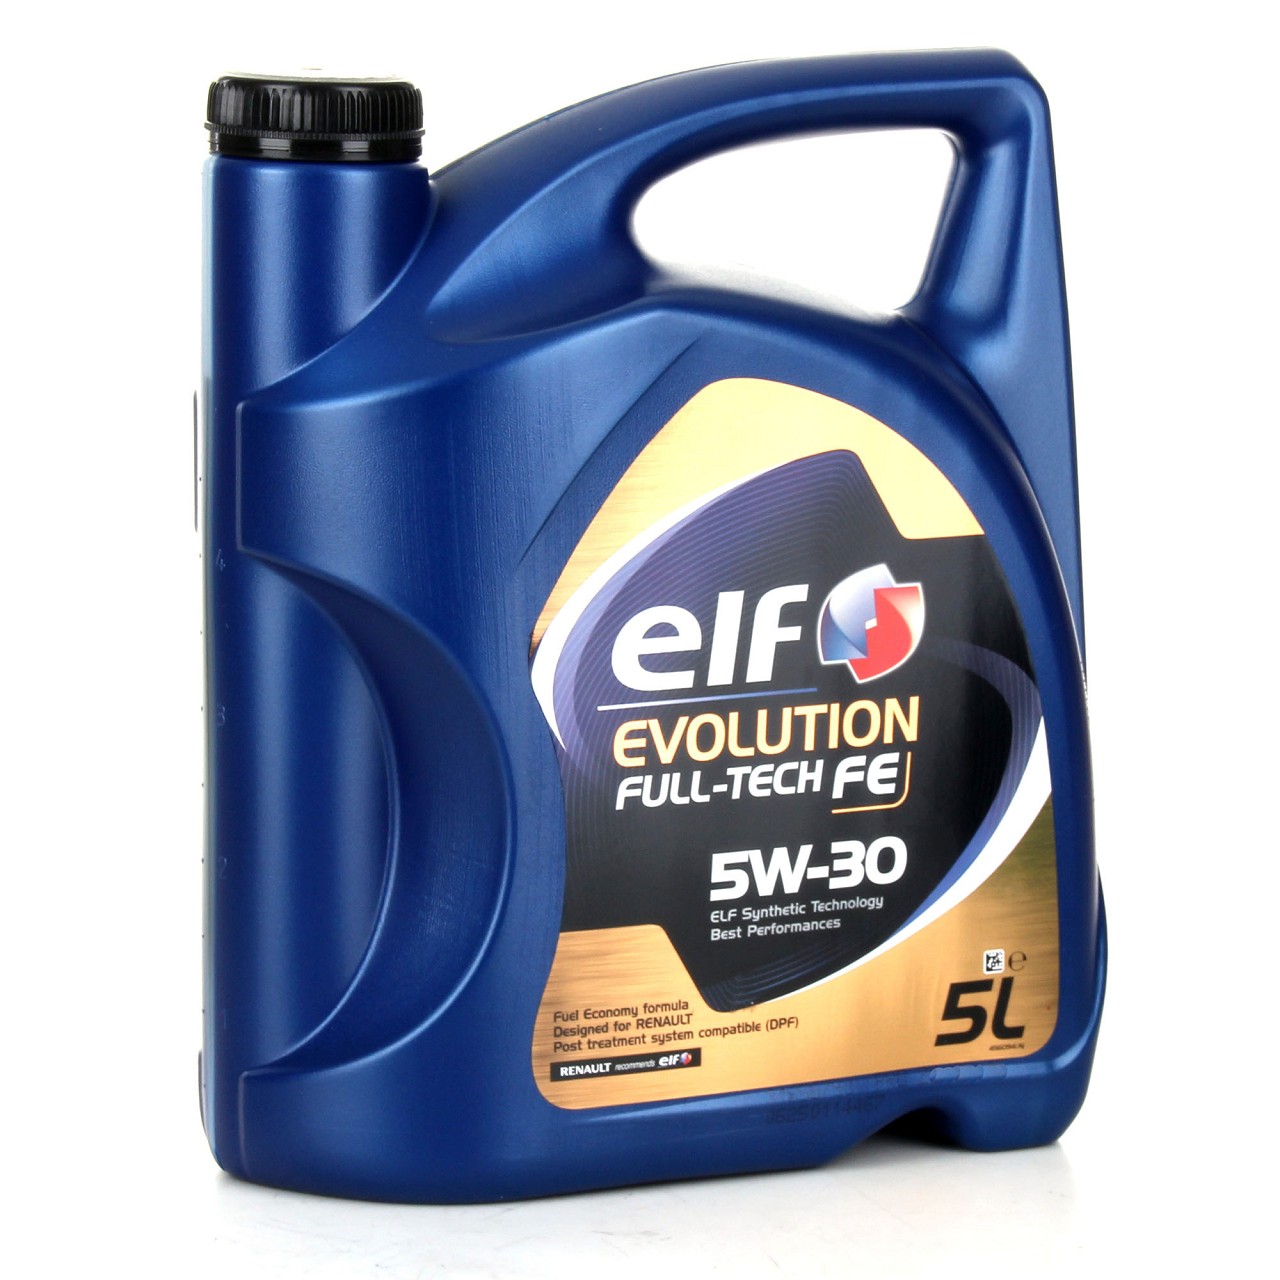 7L elf Evolution Full-Tech FE 5W-30 Motoröl ORIGINAL Renault Ölfilter 7701479124